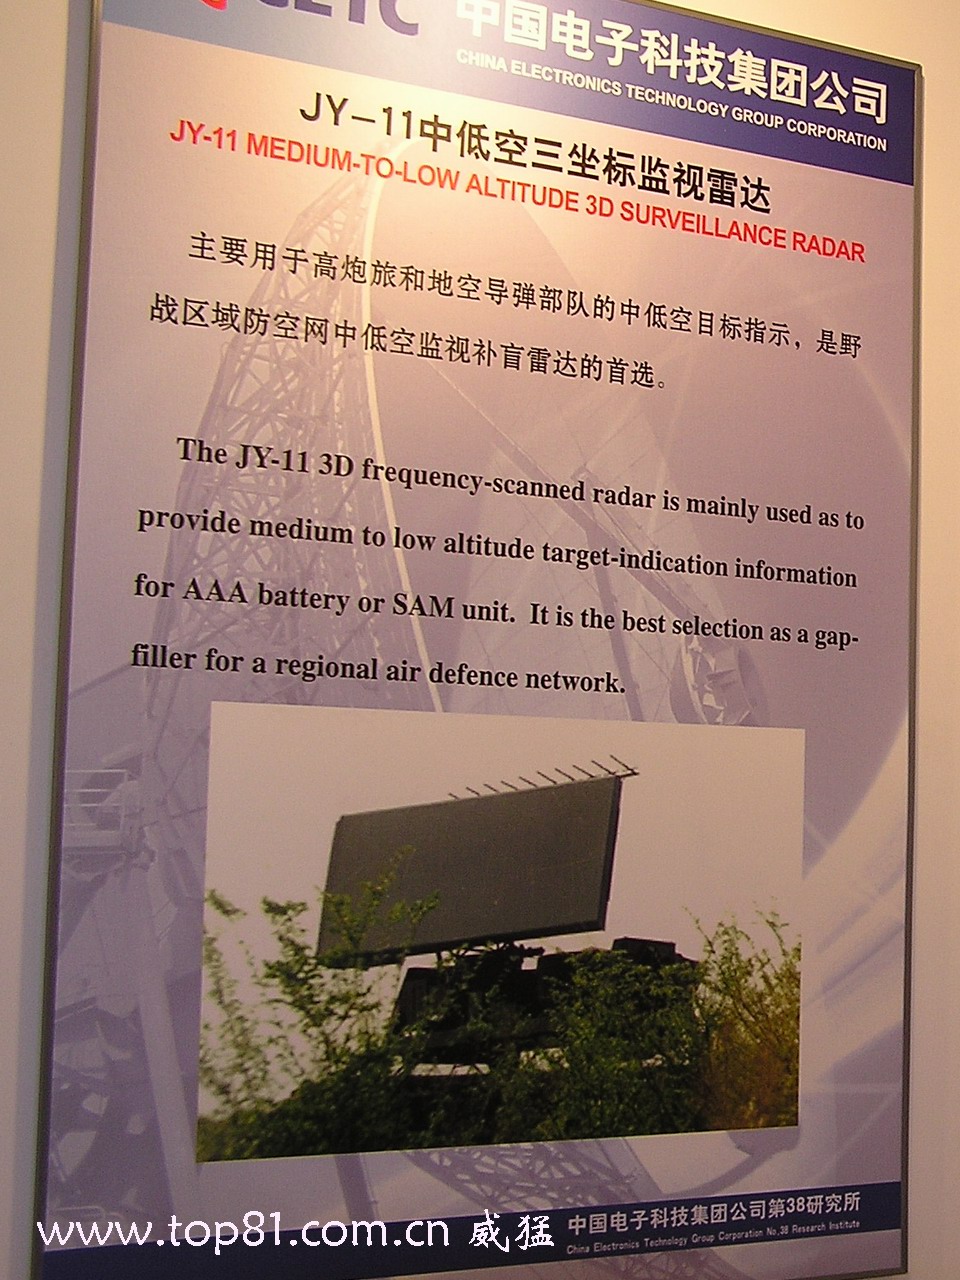 JY-11 medium to low altitude 3D surveillance radar